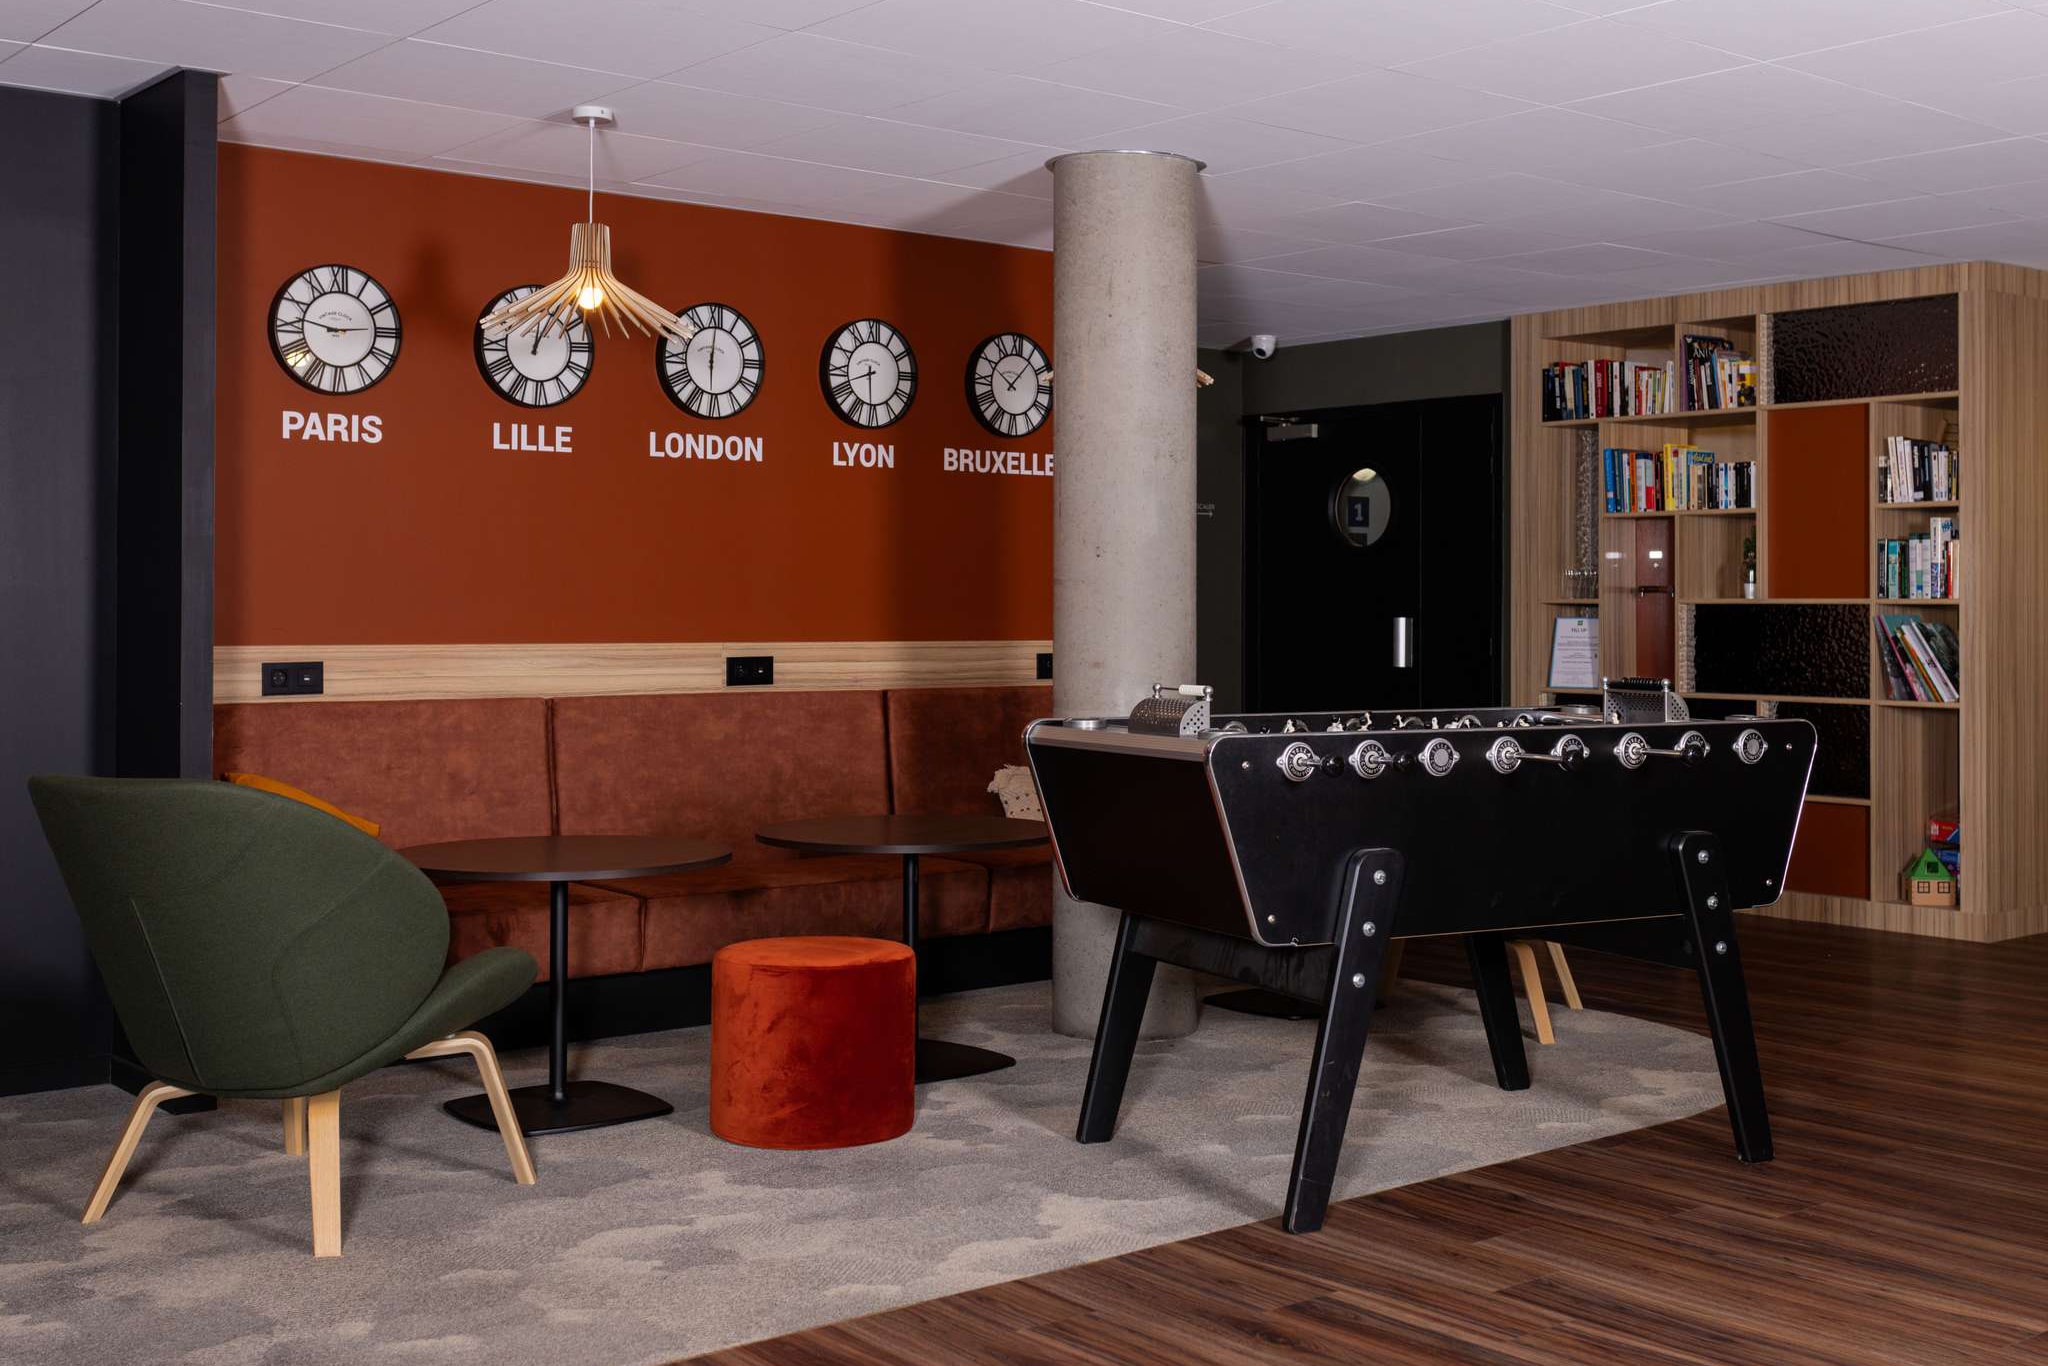 Espace détente d'un lobby d'hôtel par les designer de Lesquin VR-Architecture